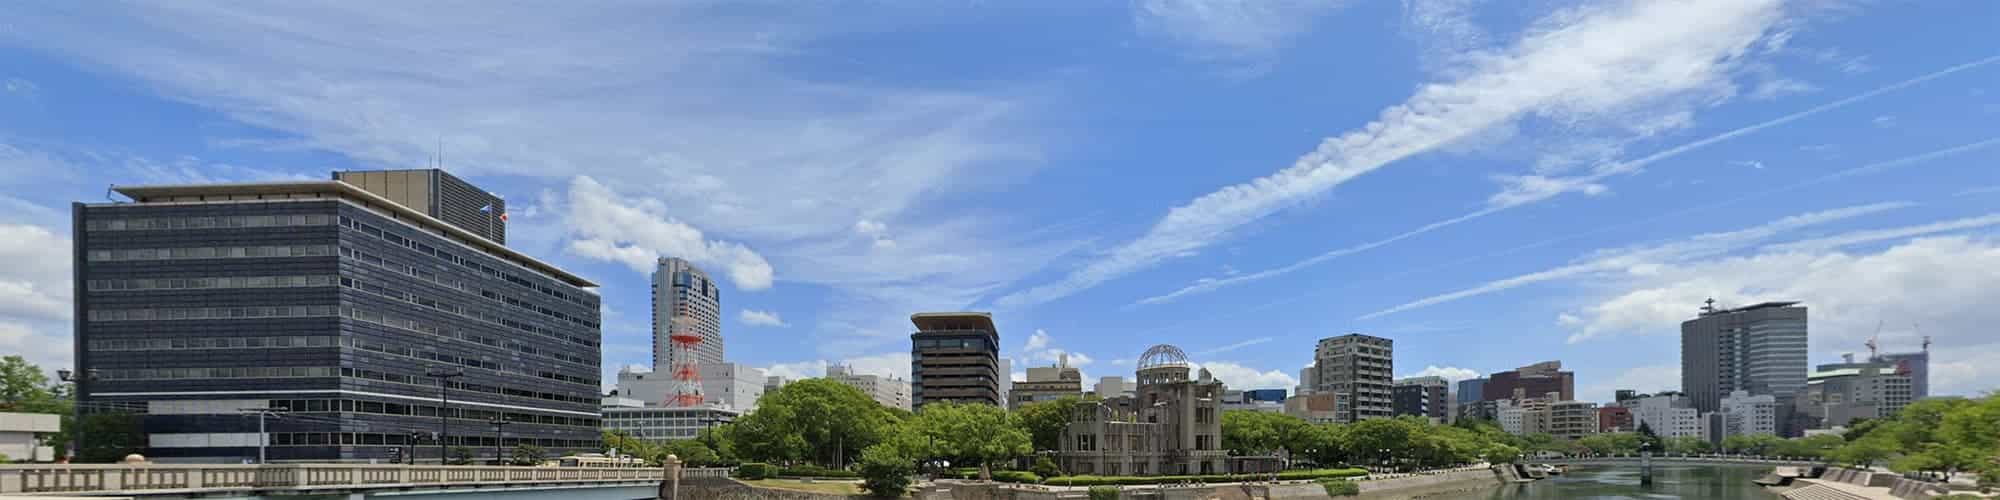 広島のオフィス街